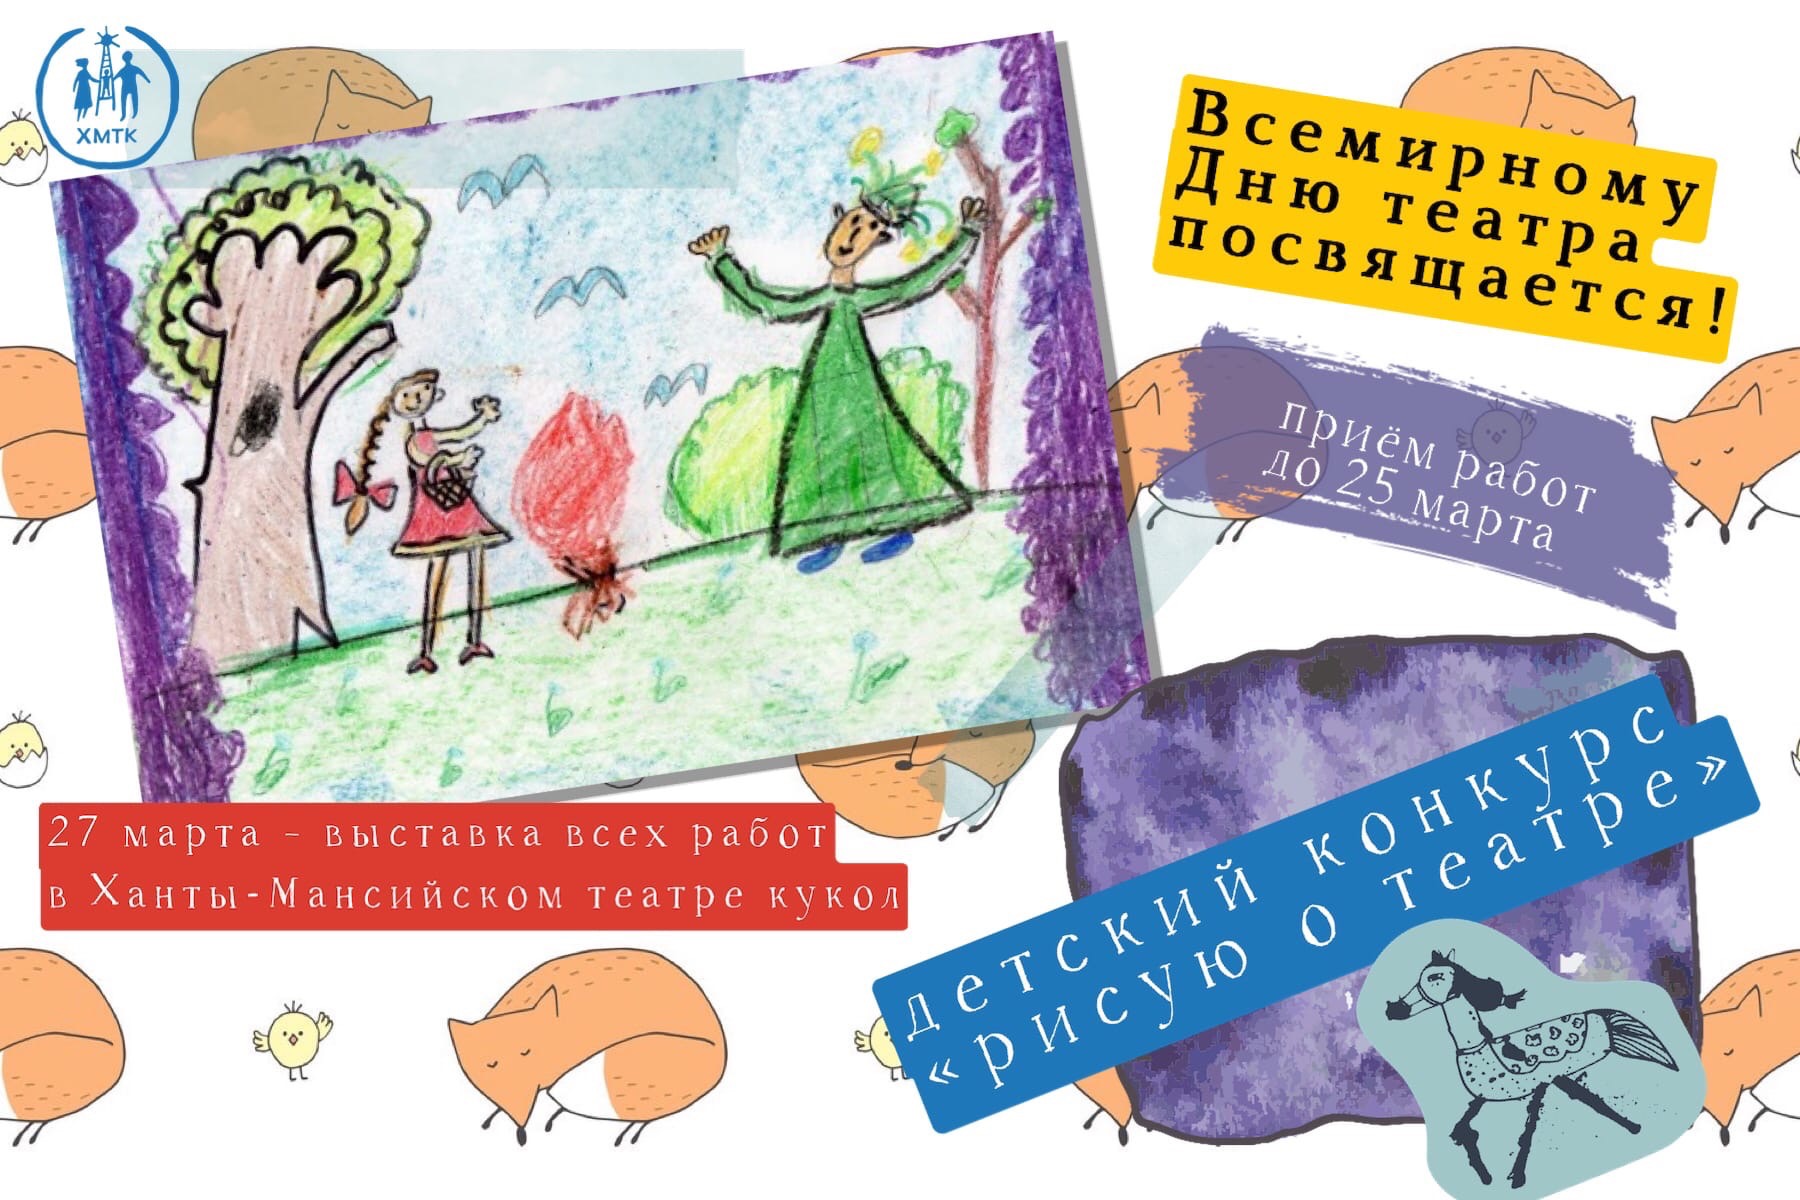 Нарисовать любимый спектакль предлагает Ханты-Мансийский театр кукол